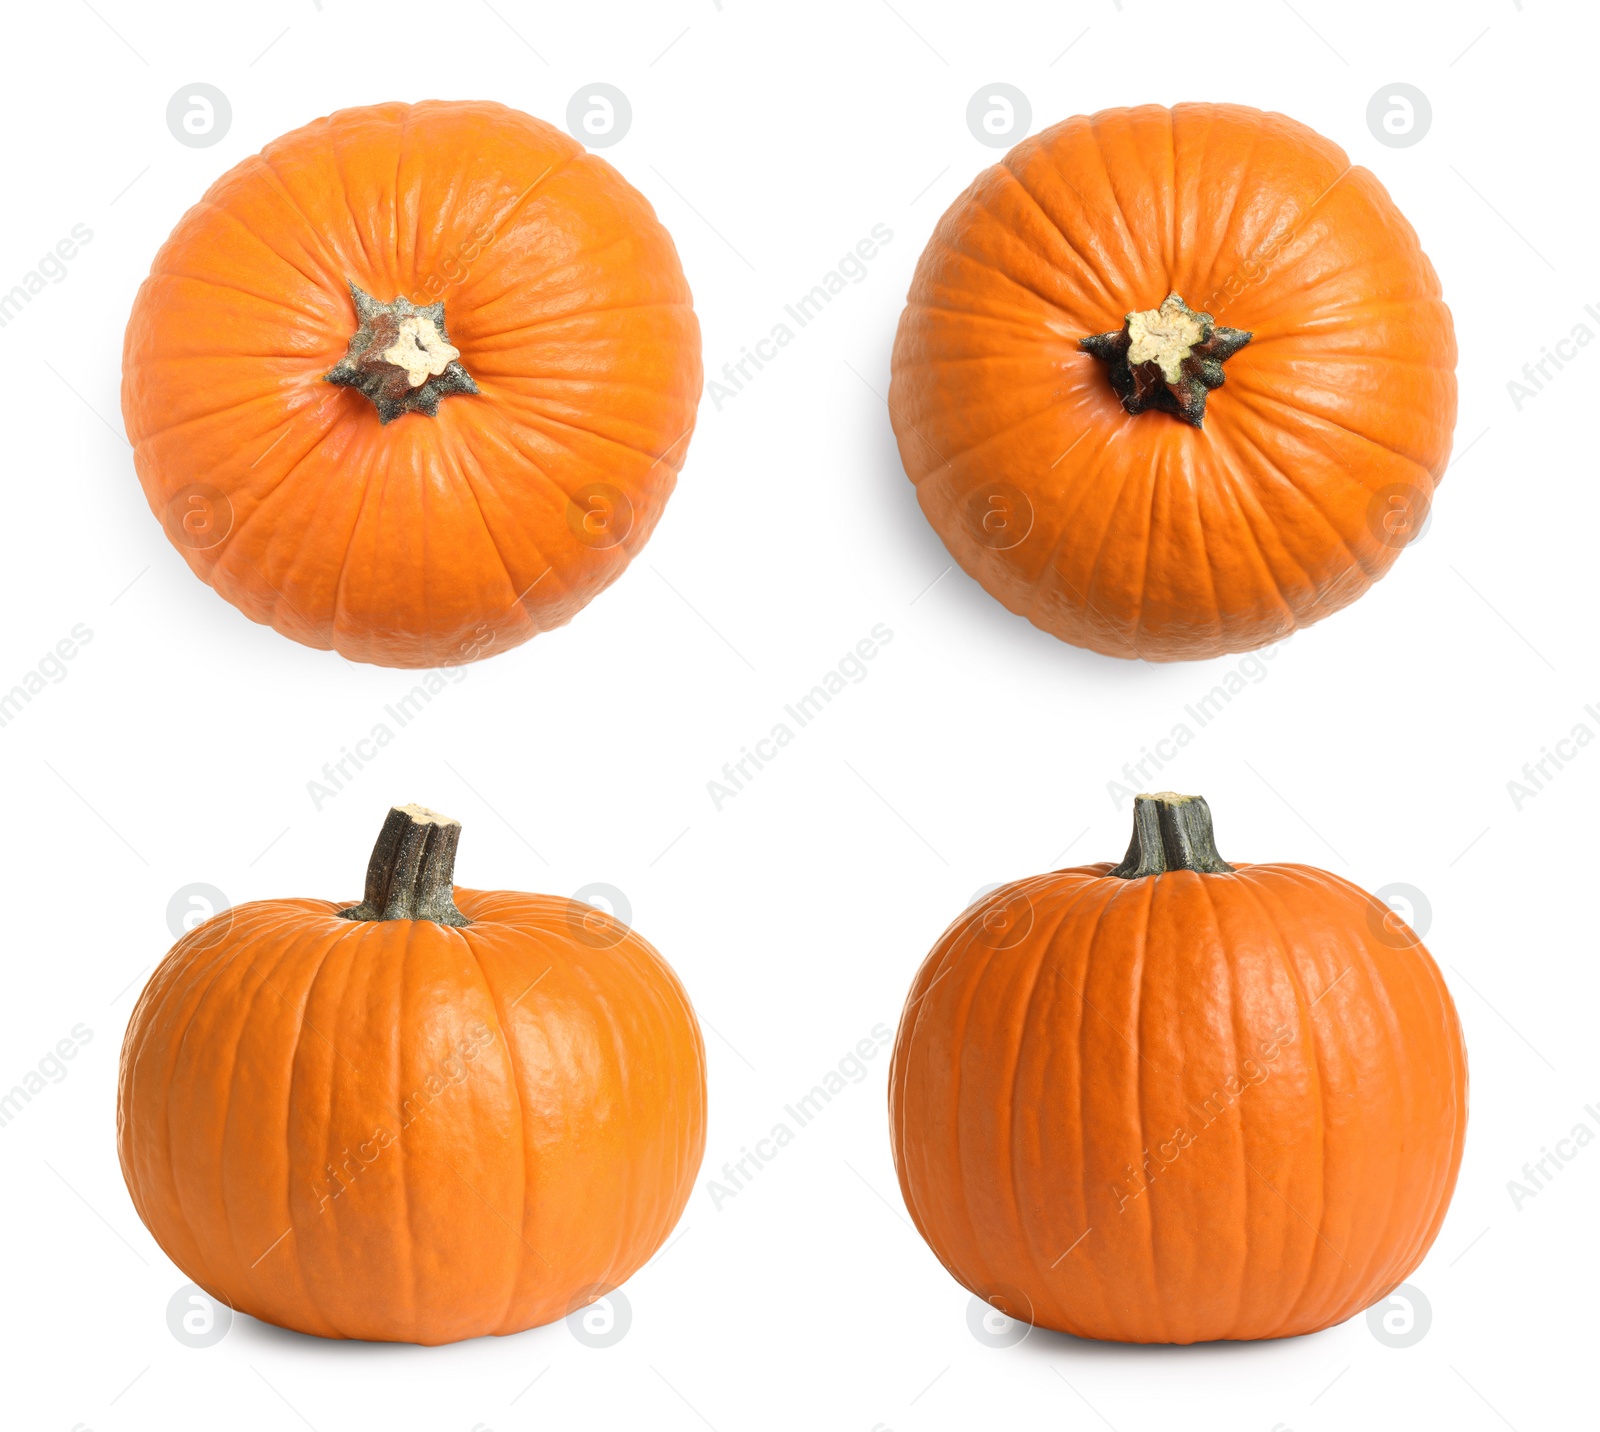 Image of Set of fresh orange pumpkins on white background